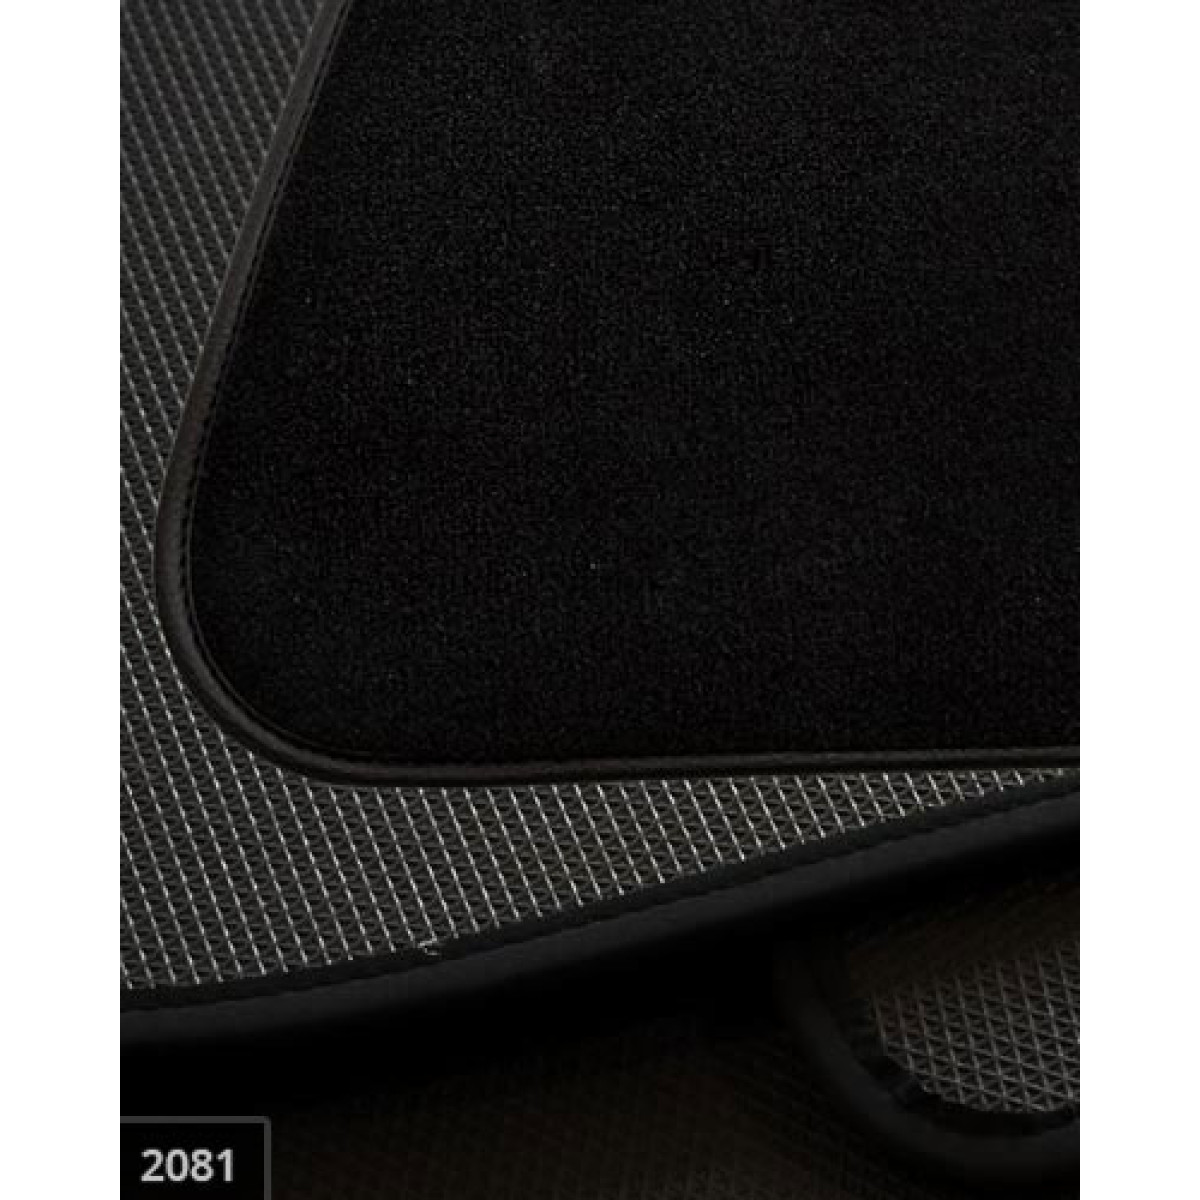 Medžiaginiai kilimėliai Audi Q7 2005-2015m.